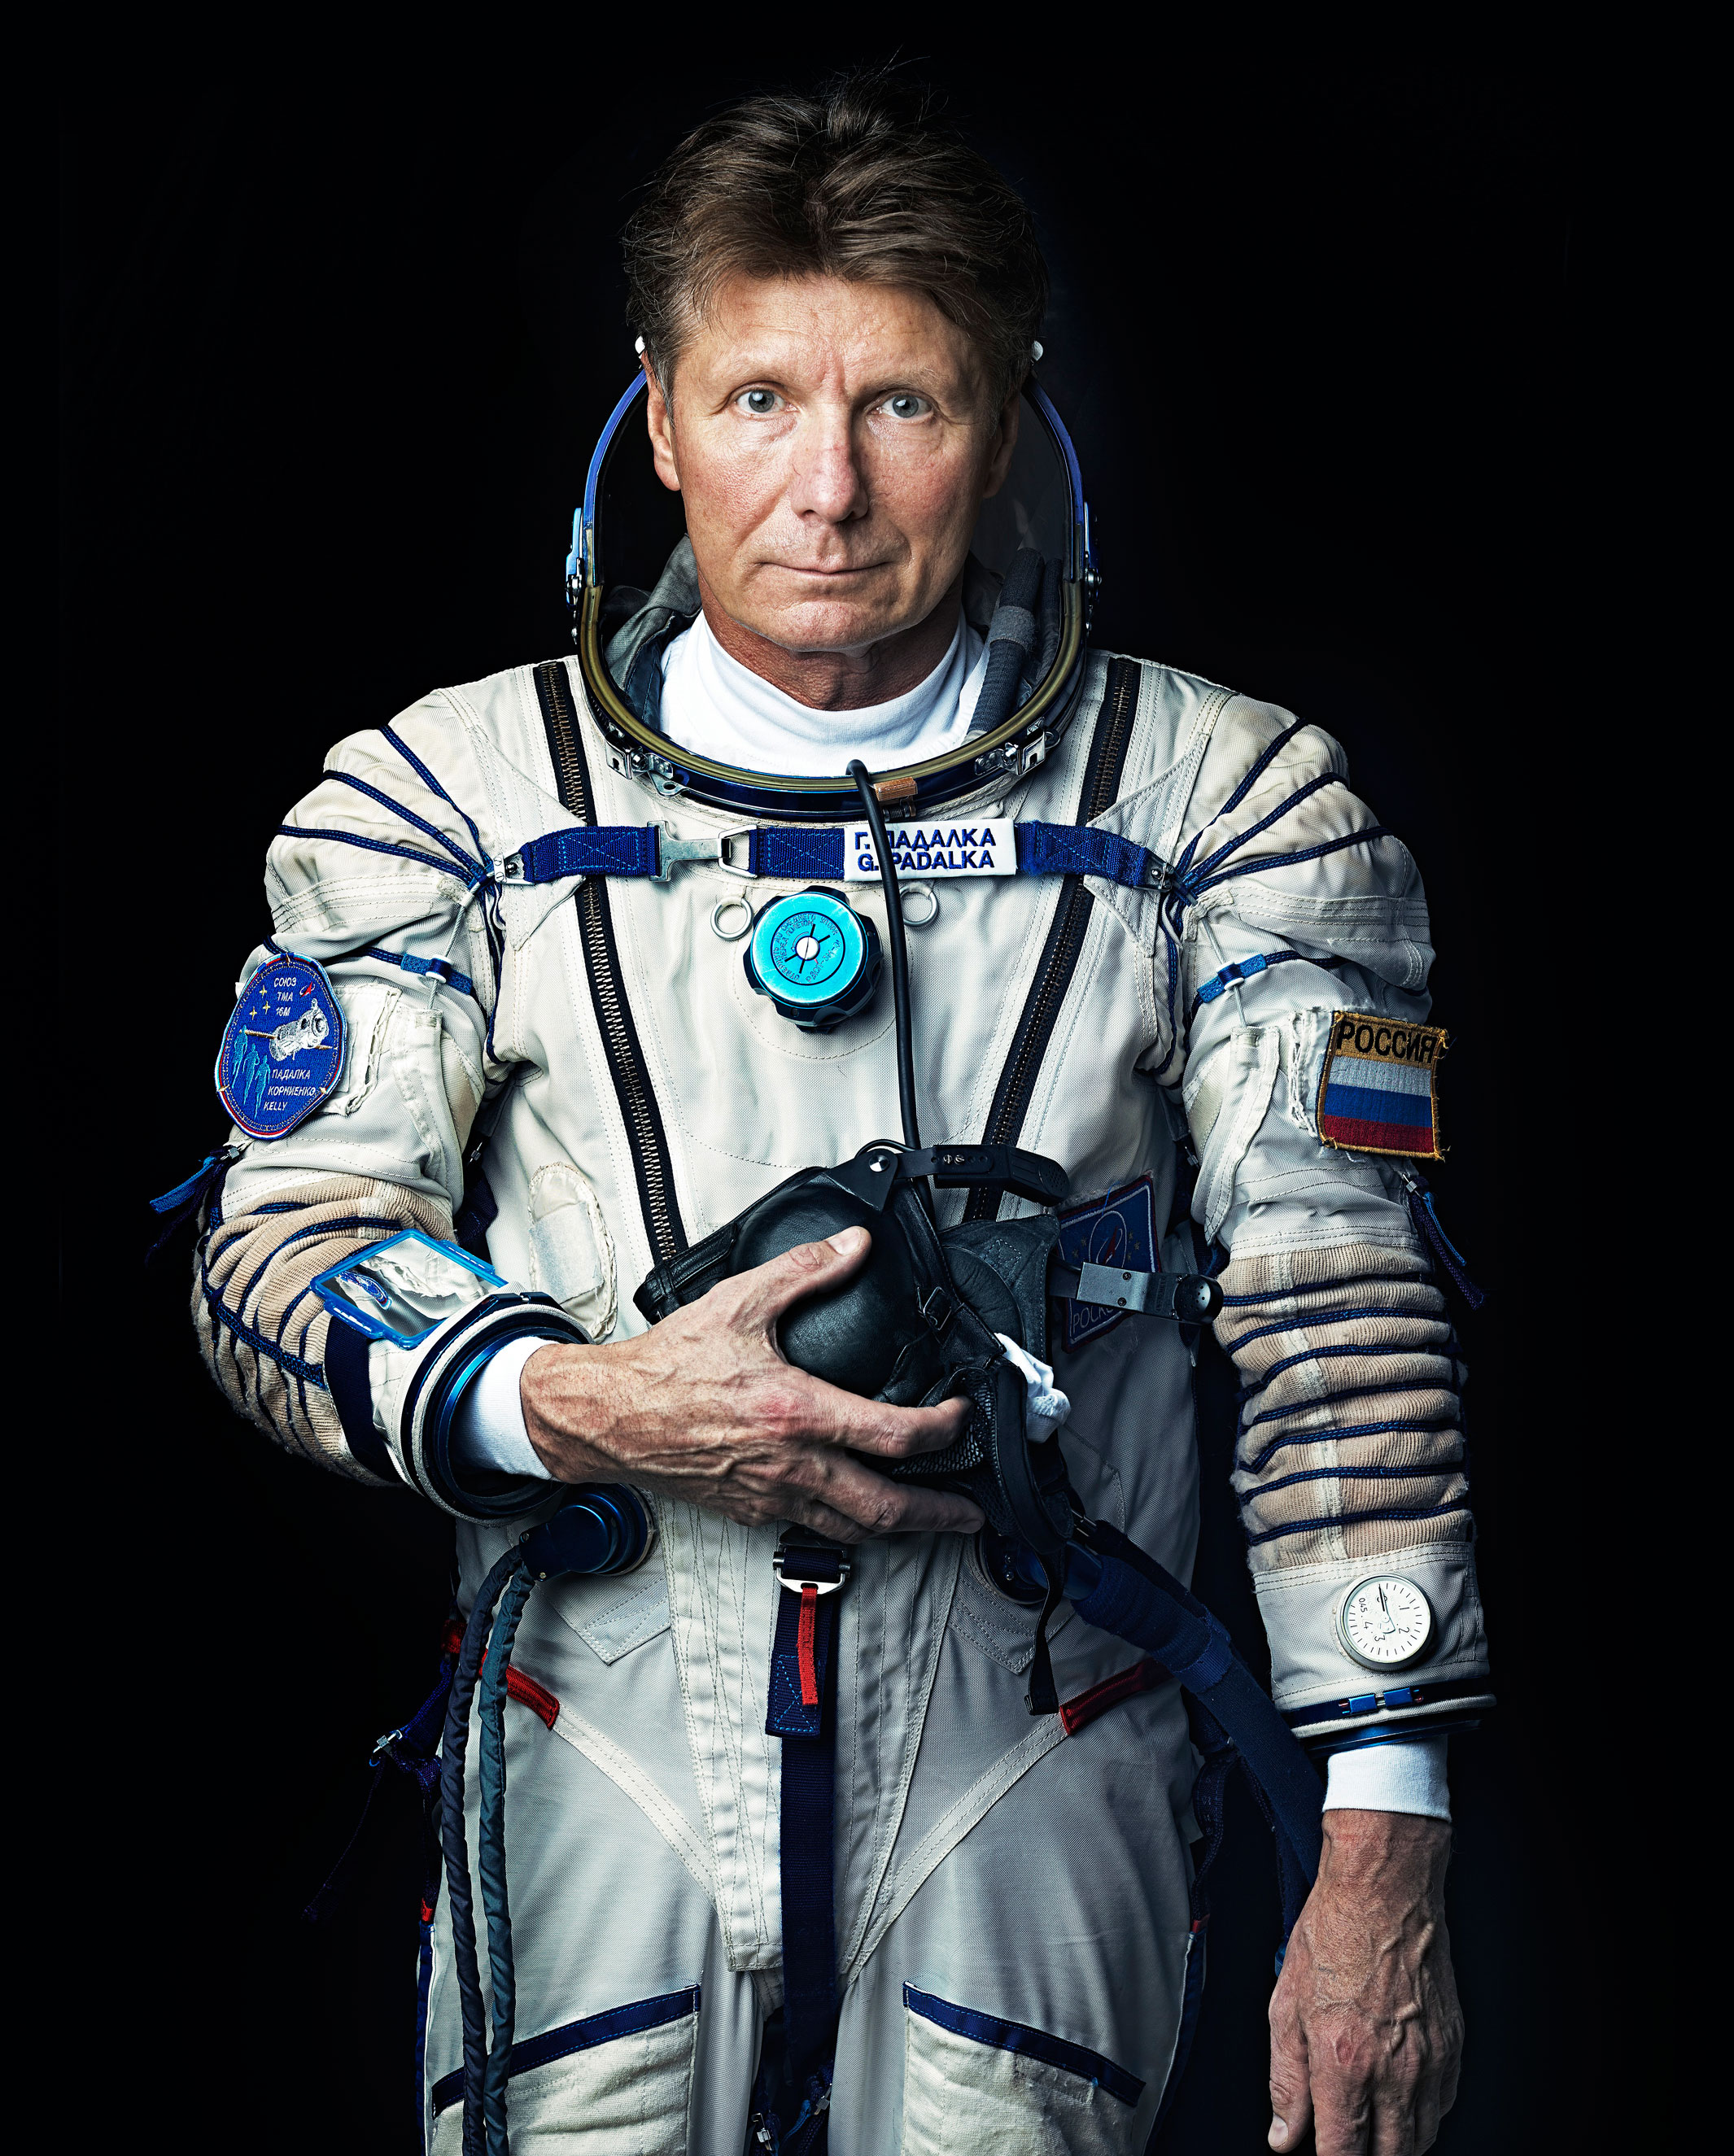 Cosmonaut Gennady Padalka